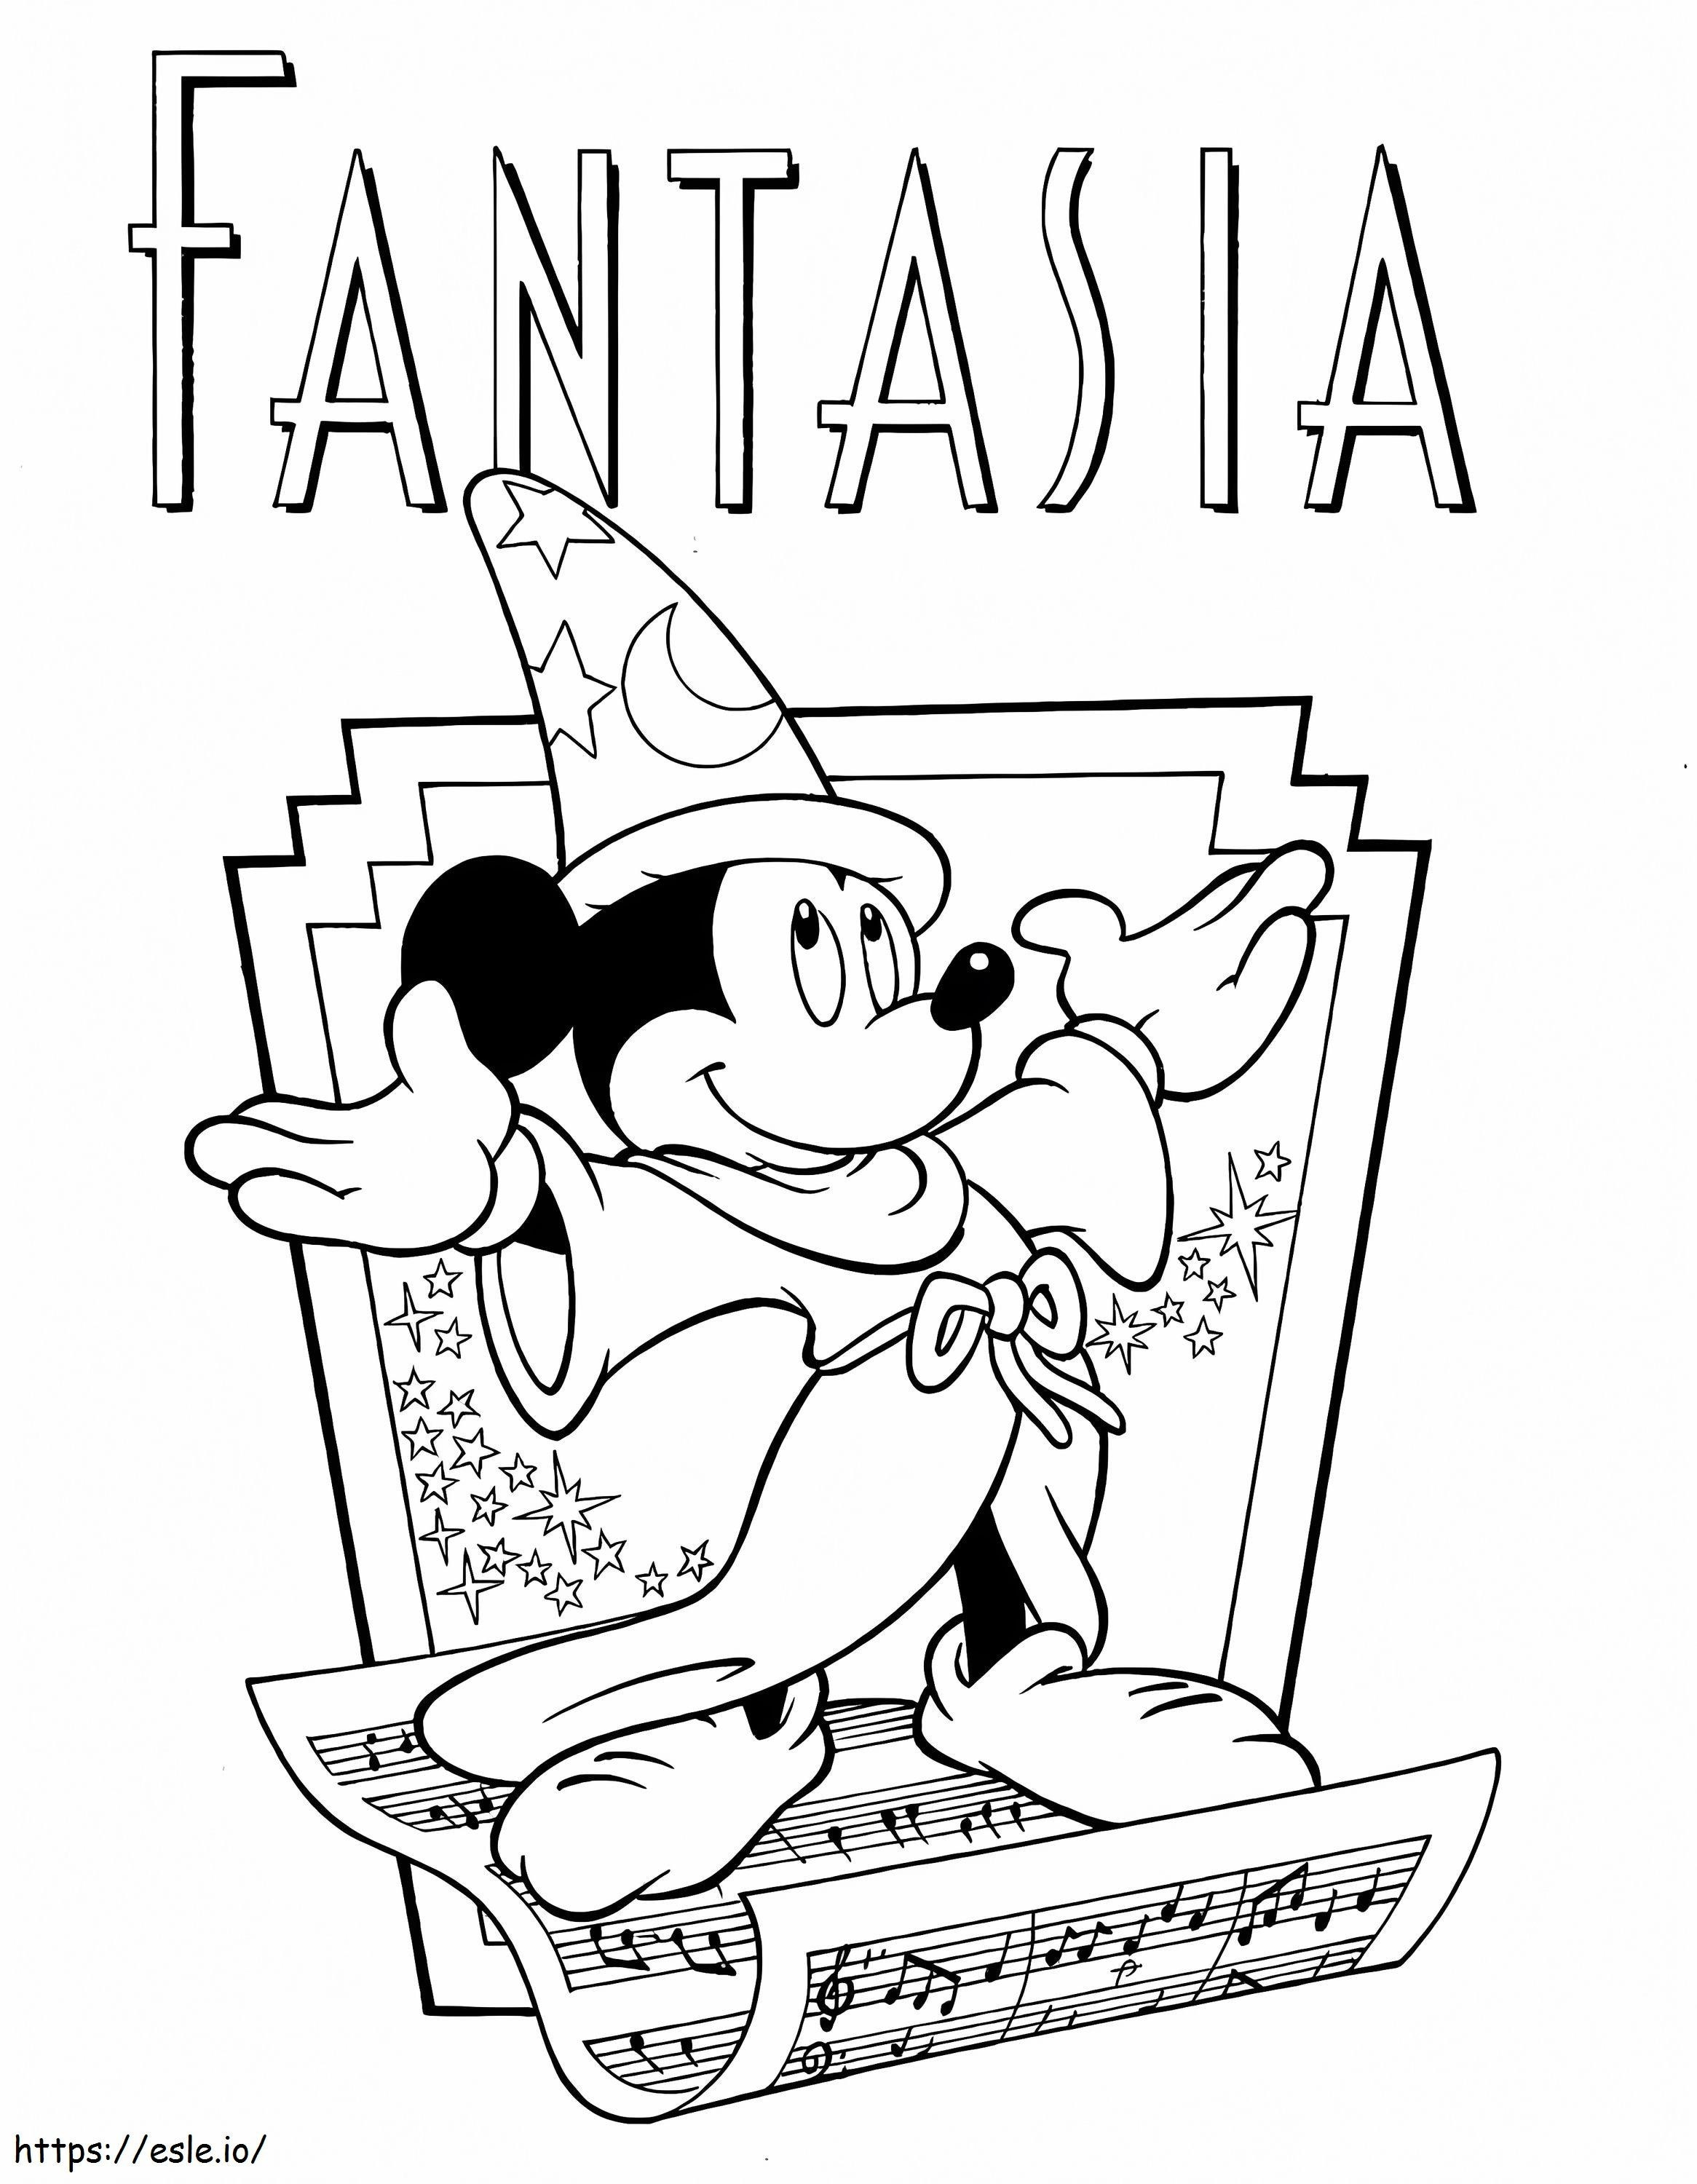 Disney Fantasia coloring page